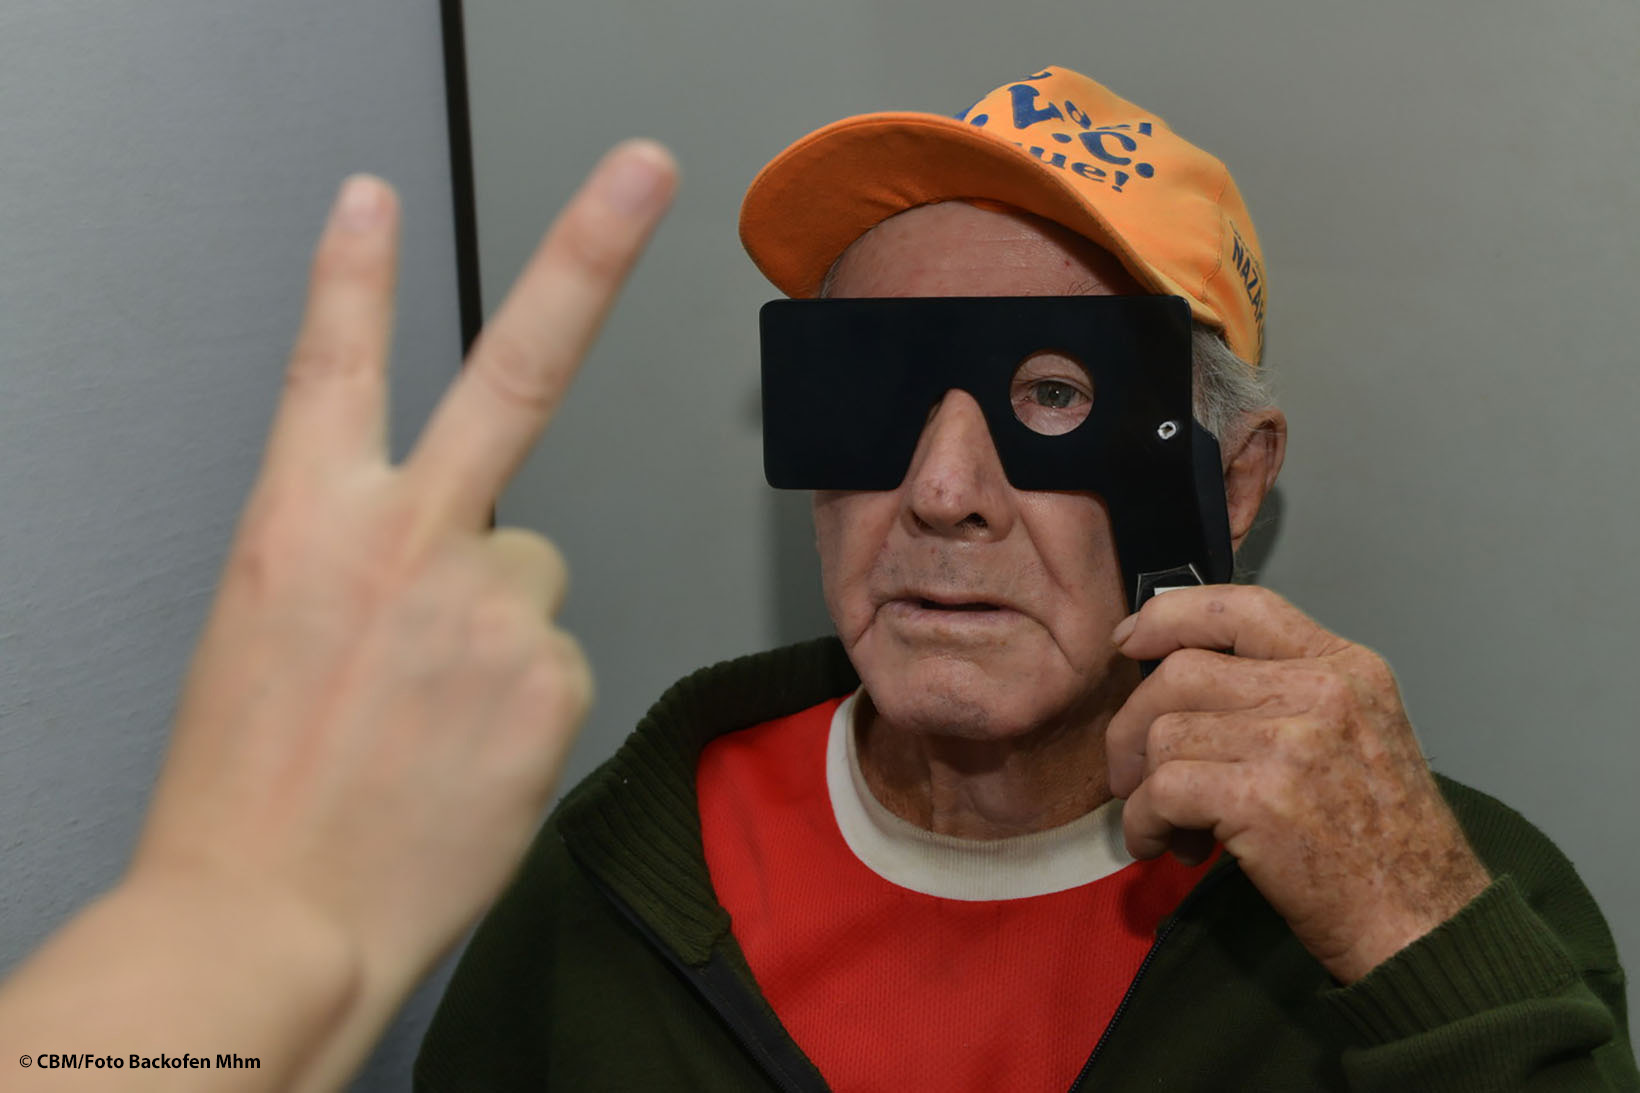 Ein Mann aus Bolivien hält sich eine Sichtabdeckung vor das Gesicht, sodass er nur mit dem linken Augen sieht, und versucht, die zwei Finger einer anderen Person zu erkennen.